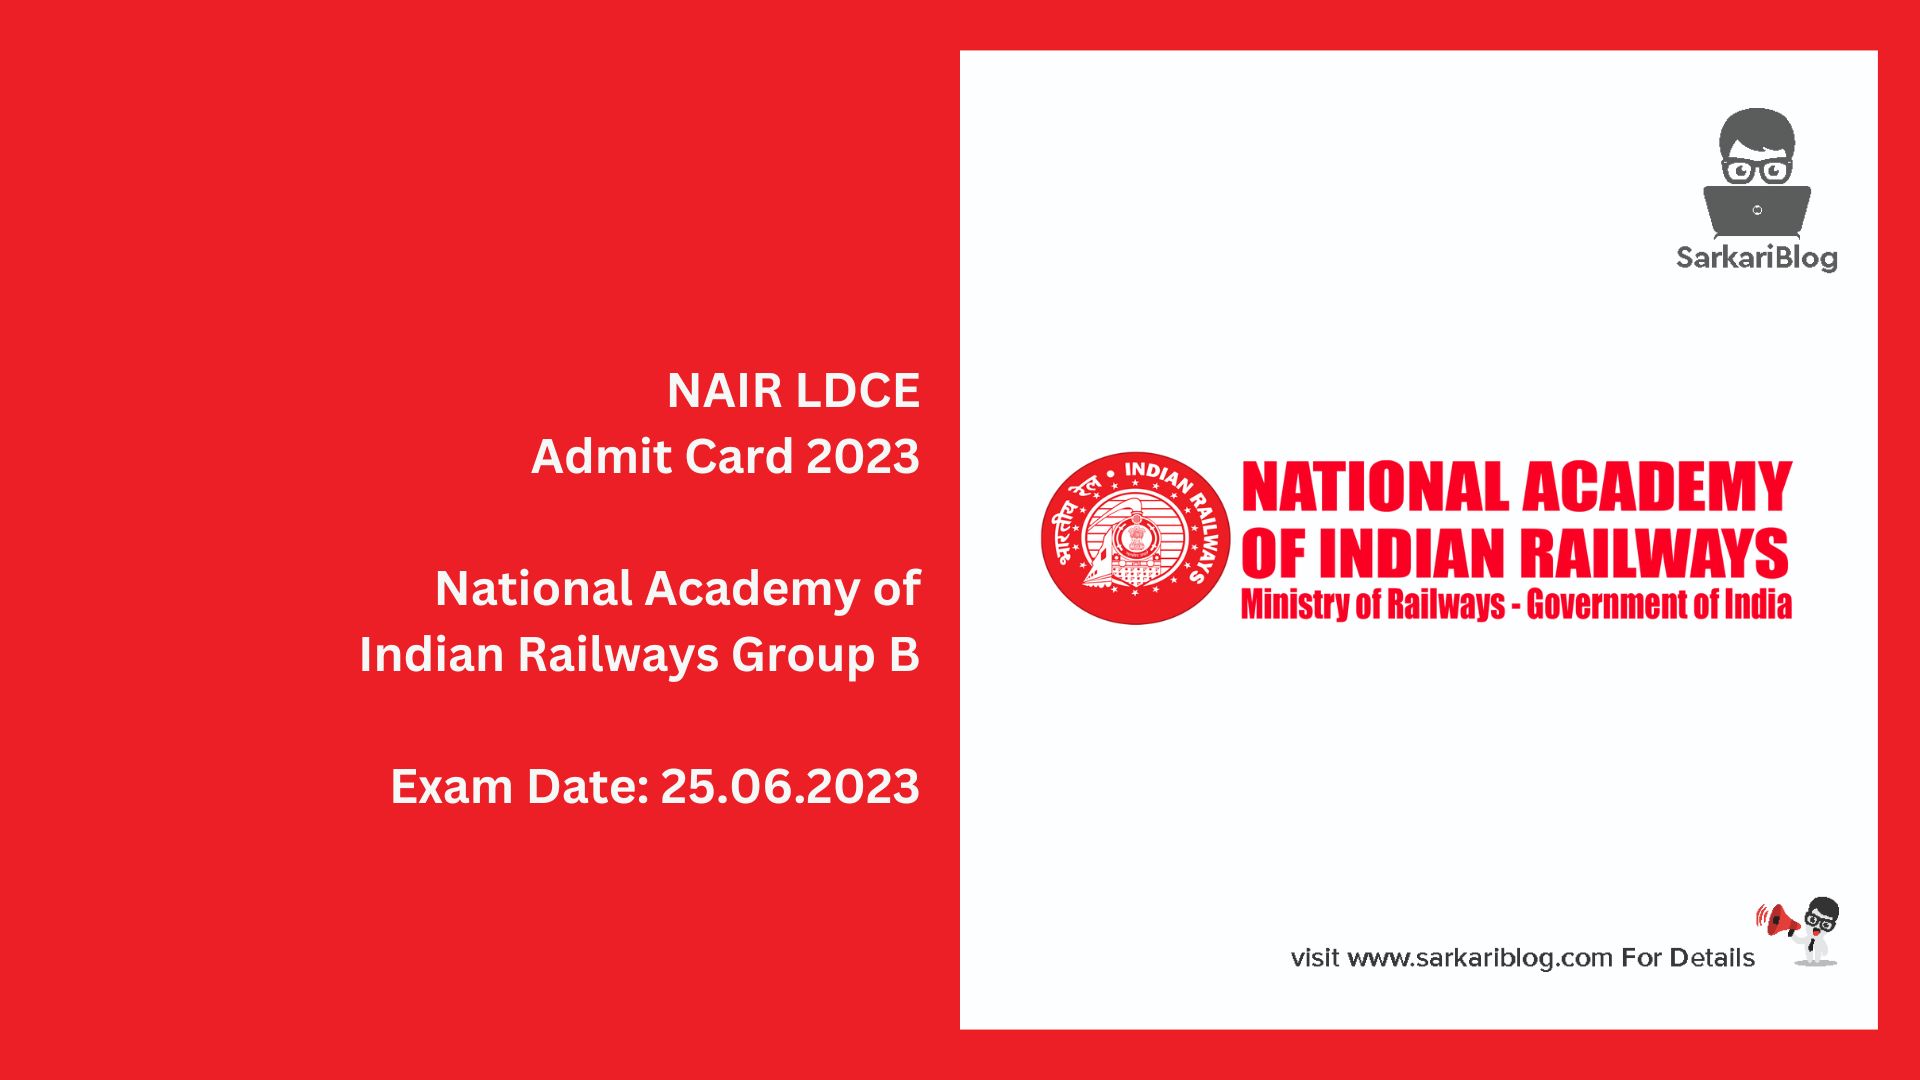 NAIR LDCE Admit Card 2023